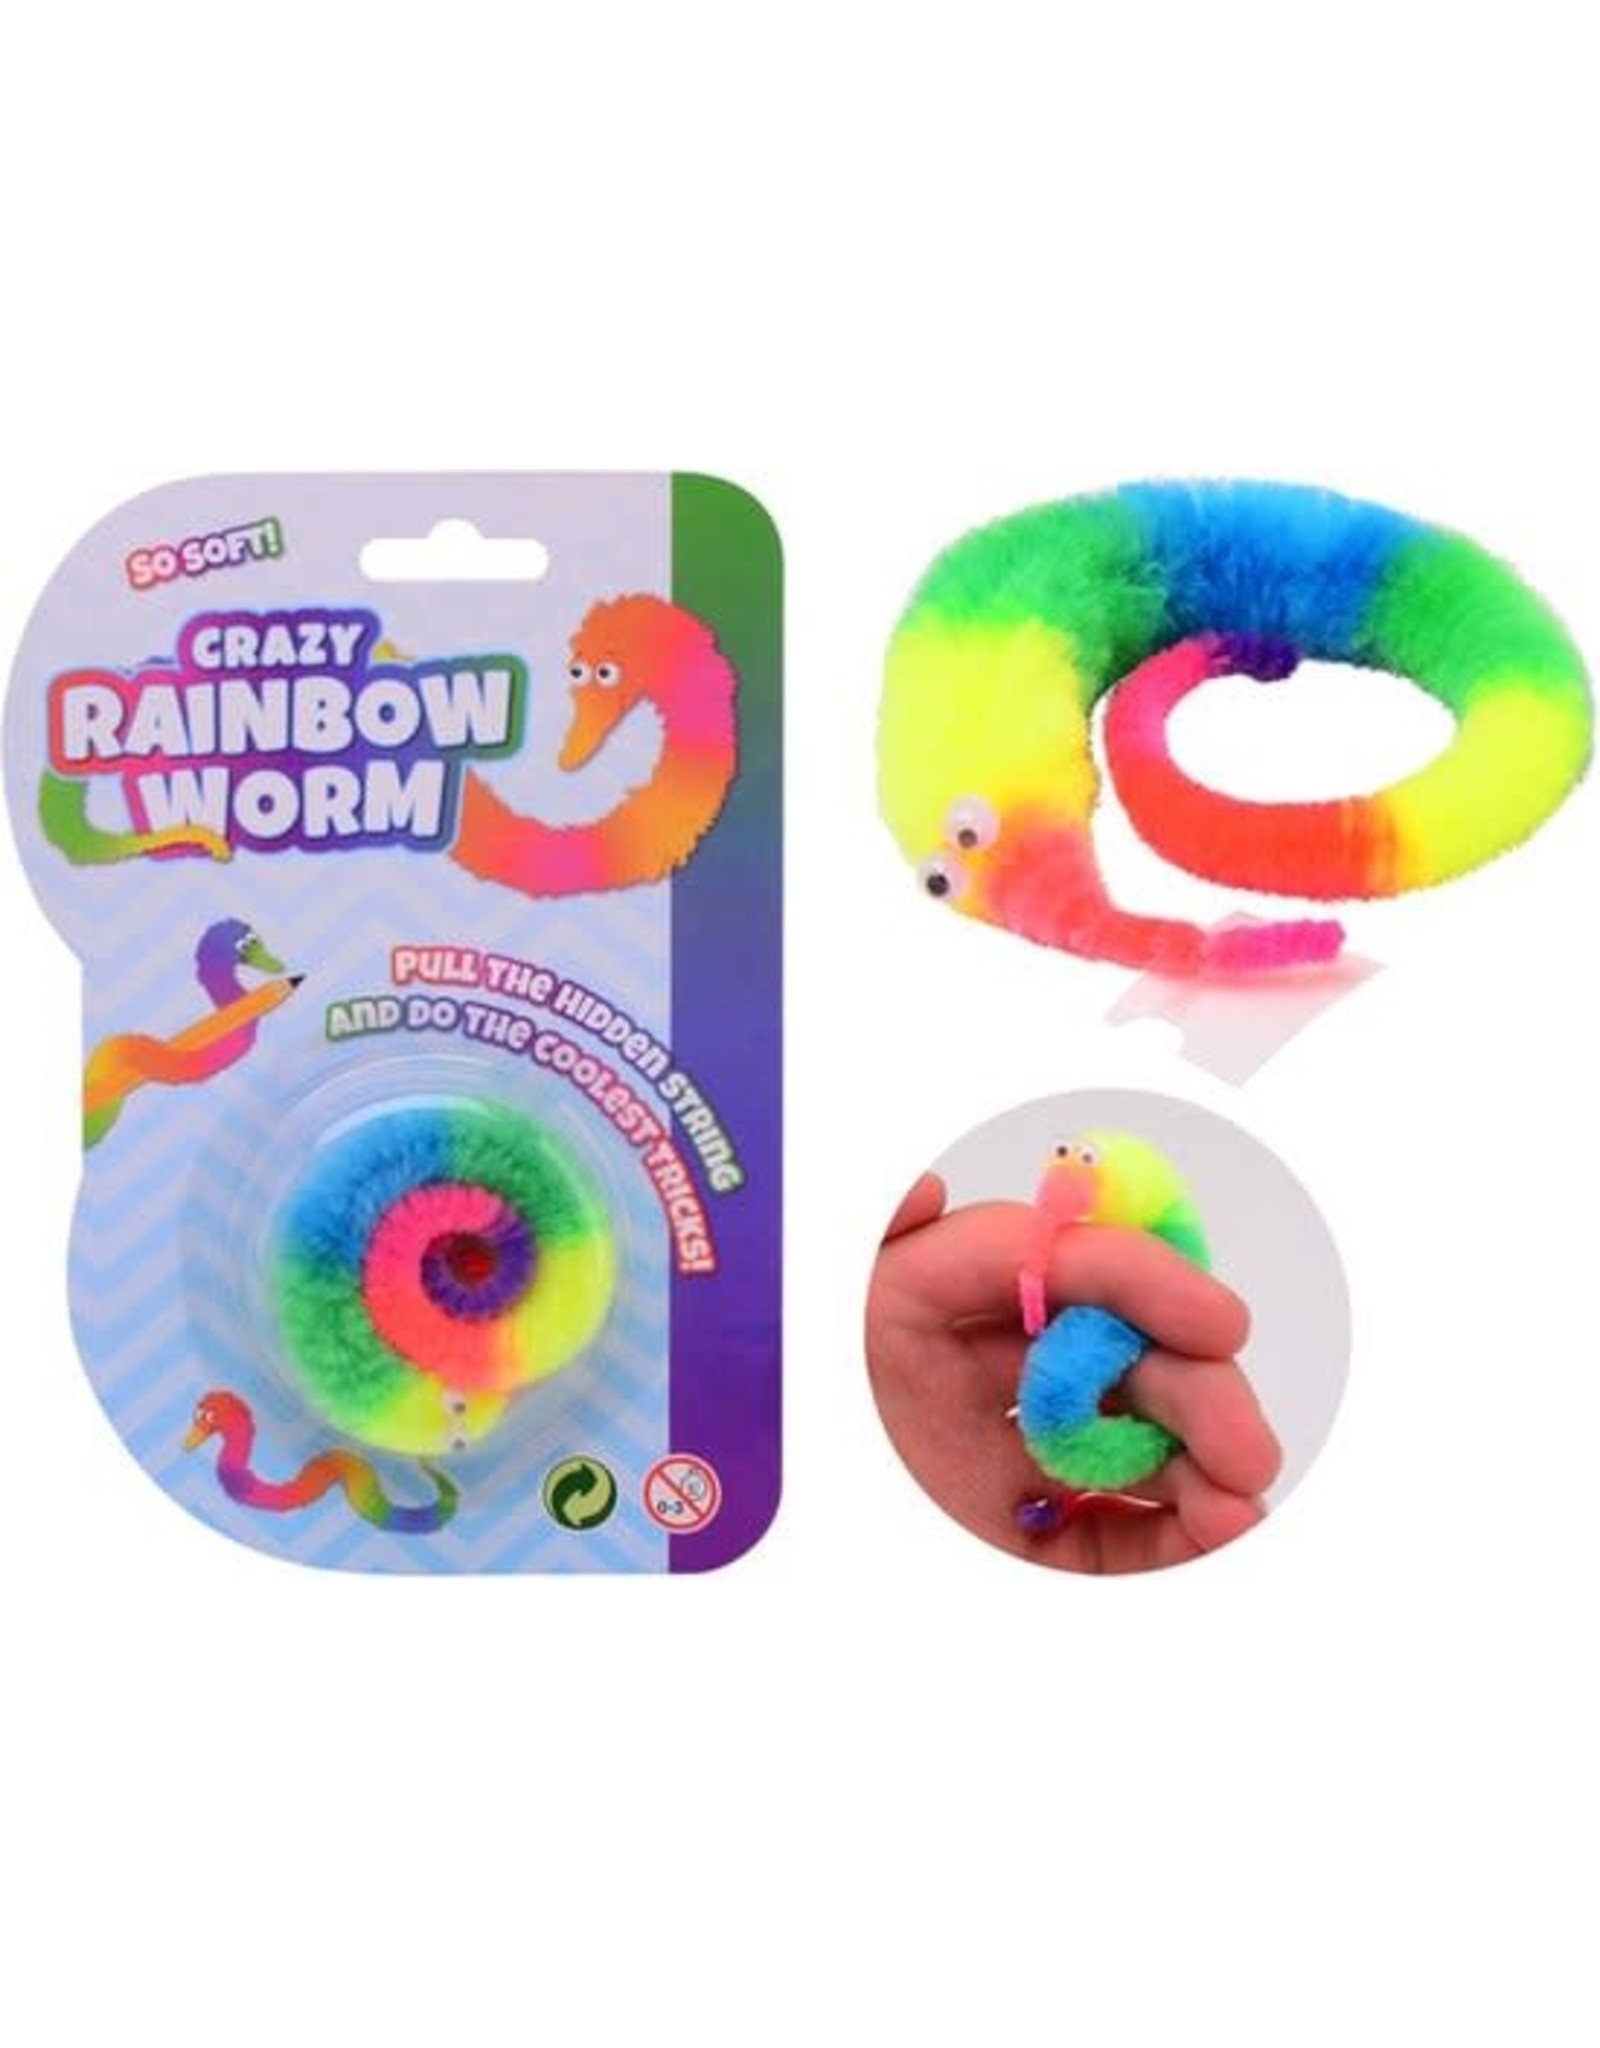 Gekke regenboog worm -Magische Crazy Rainbow Worm - Magic Worm